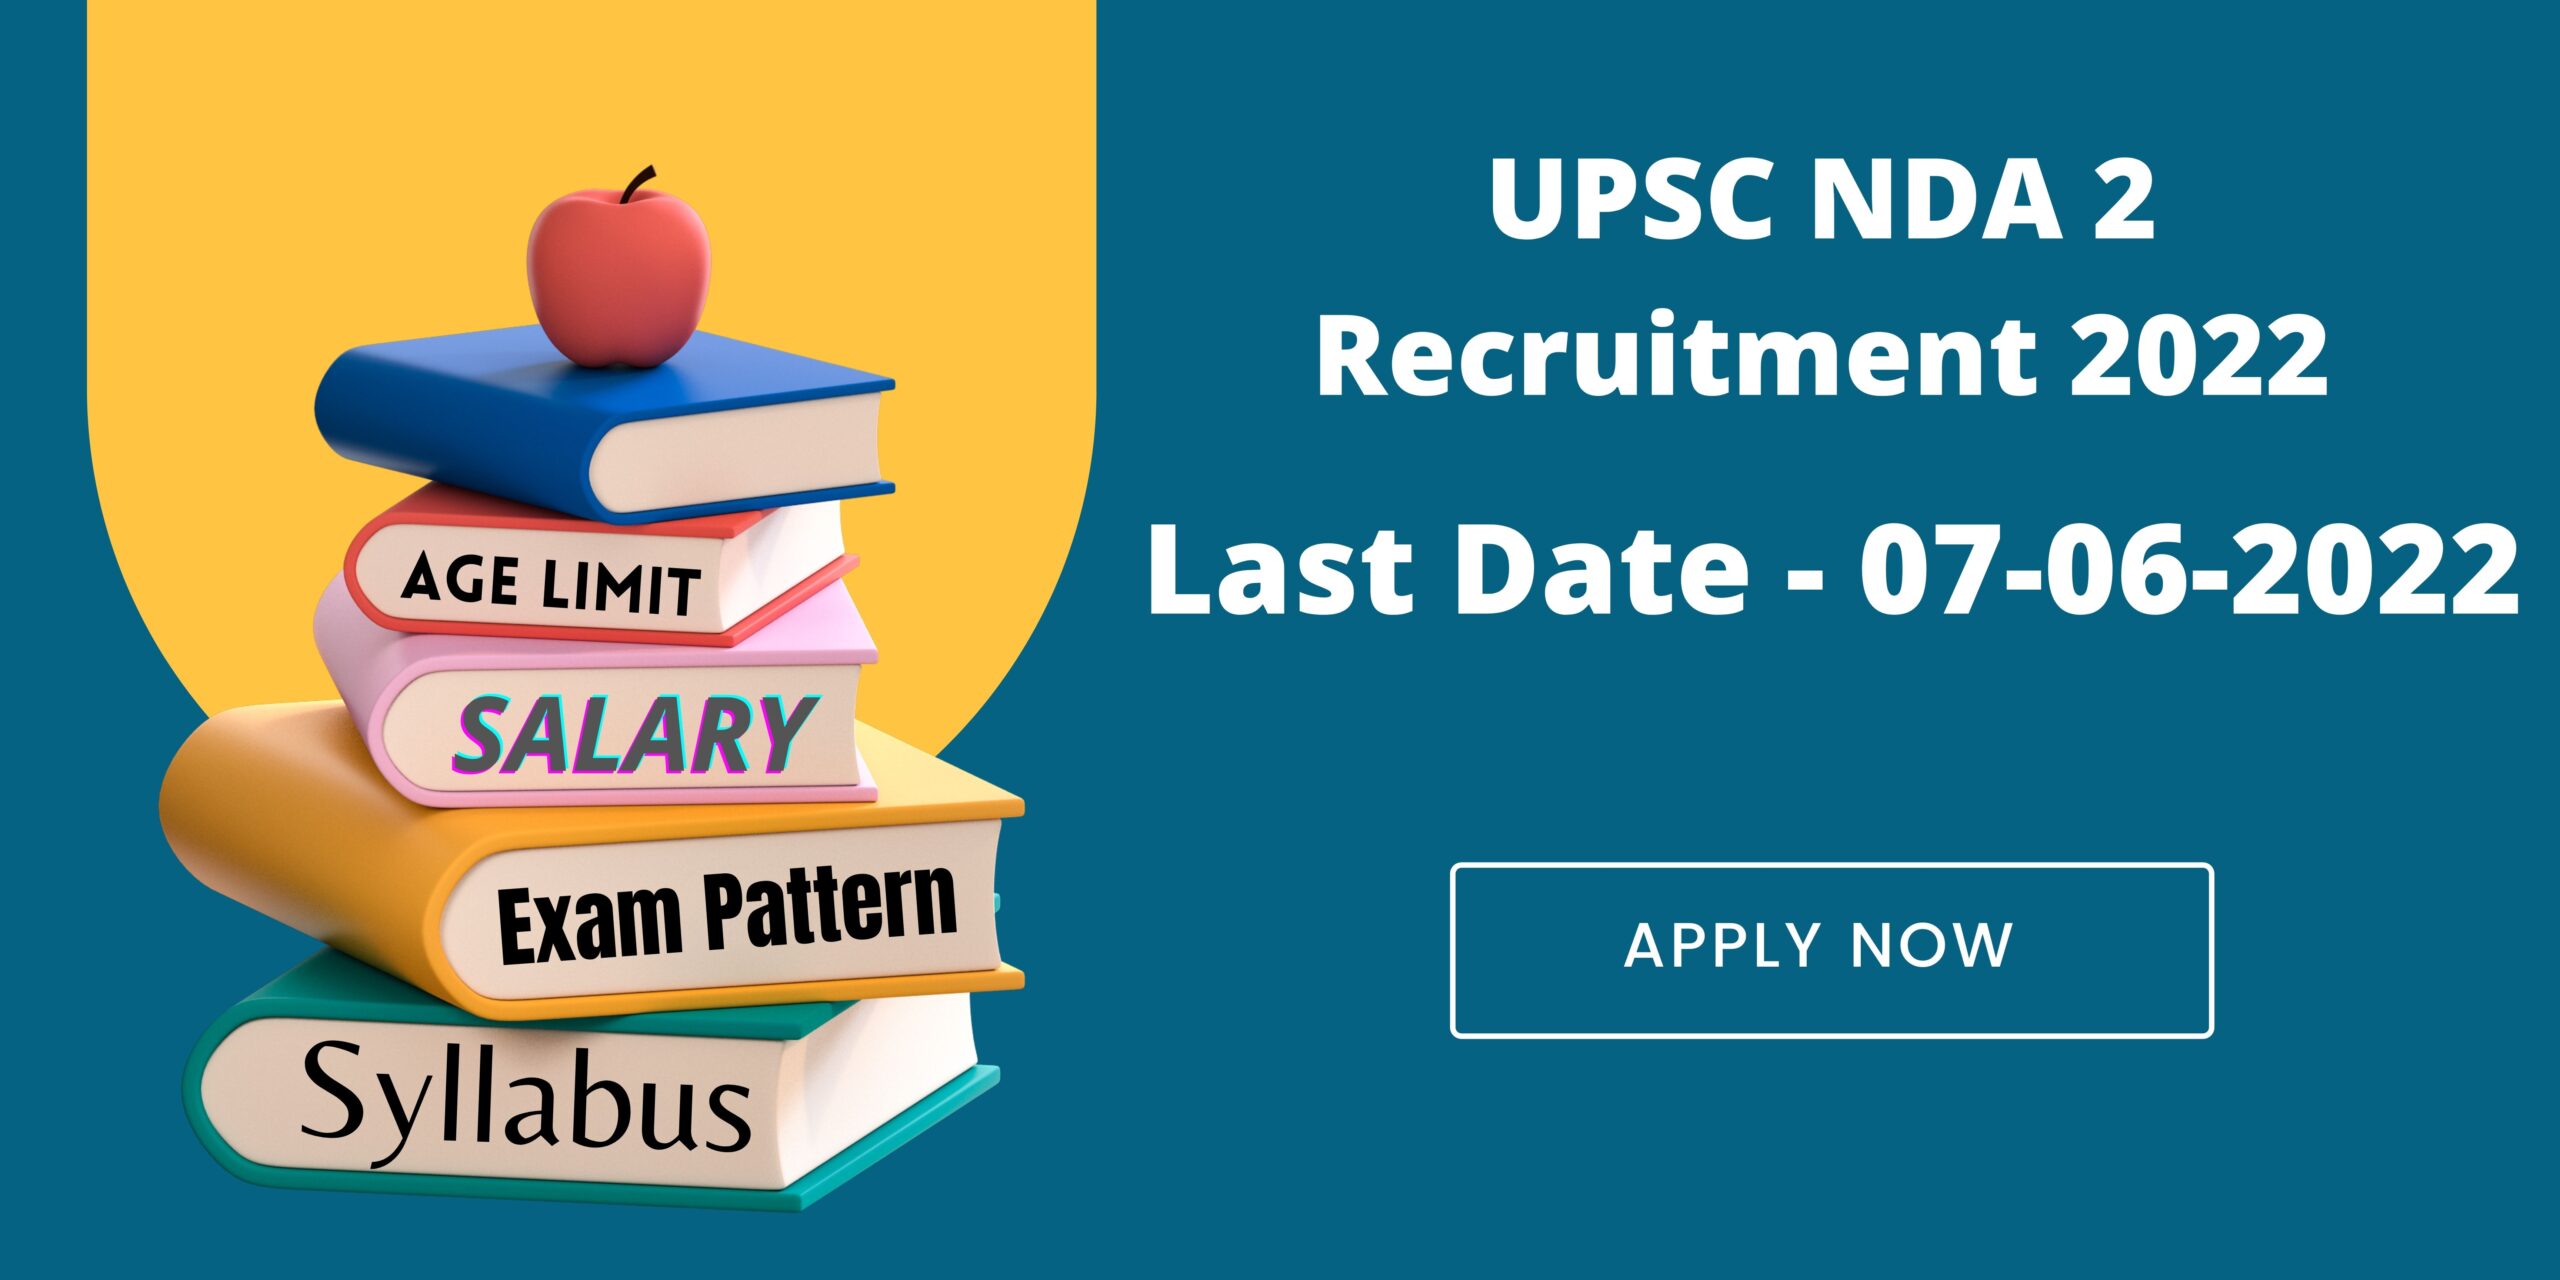 UPSC NDA 2 Recruitment 2022